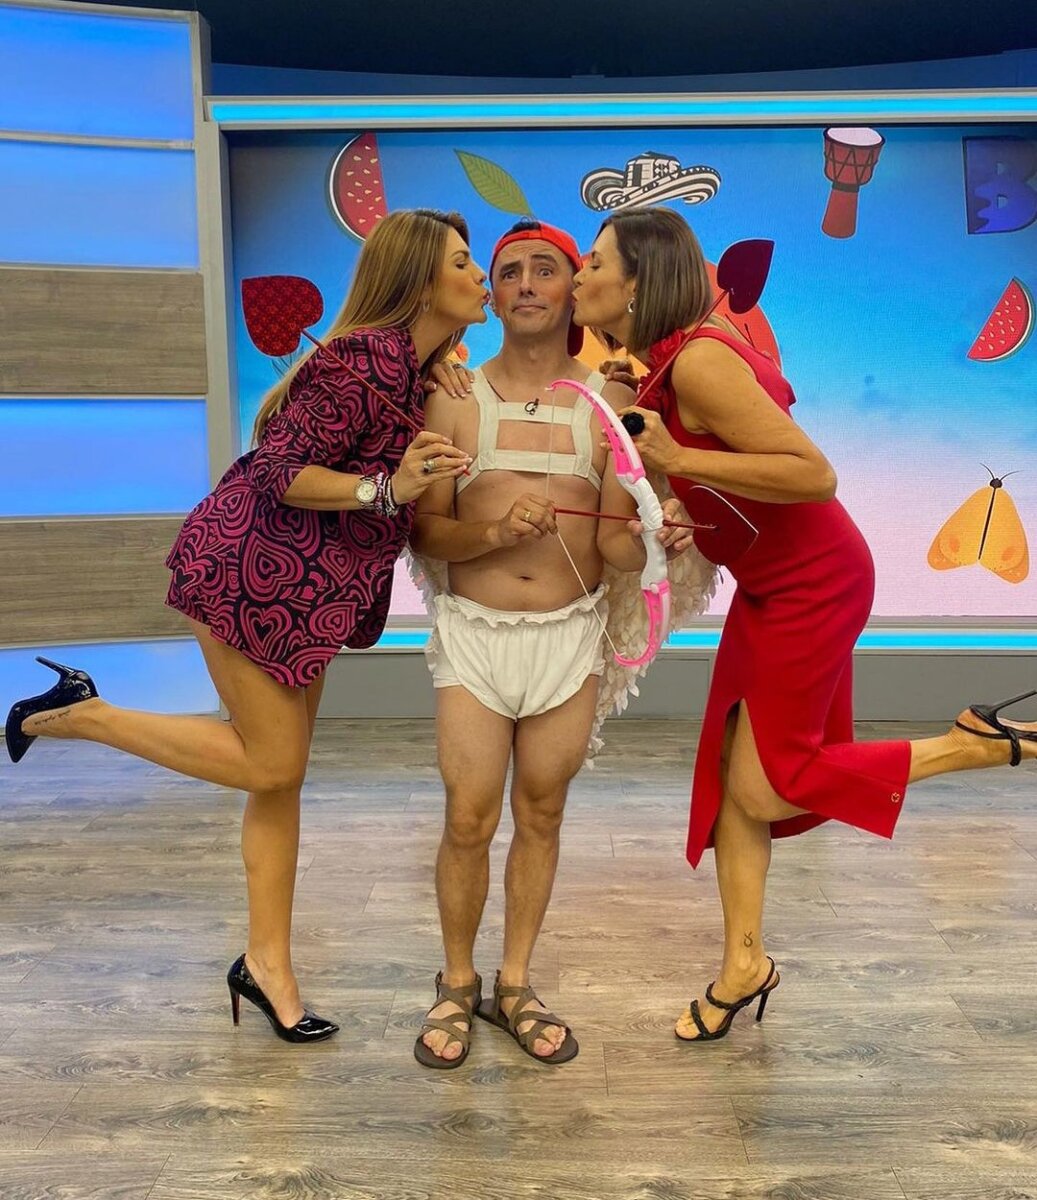 Luchito salió en 'paños menores' en televisión y enamoró a más de una #ZonaRosa Luchito, el humorista que alegra las mañanas en Tropicana, sorprendió en San Valentín al llegar al set de 'Buen Día Colombia' en 'paños menores' disfrazado de Cupido.